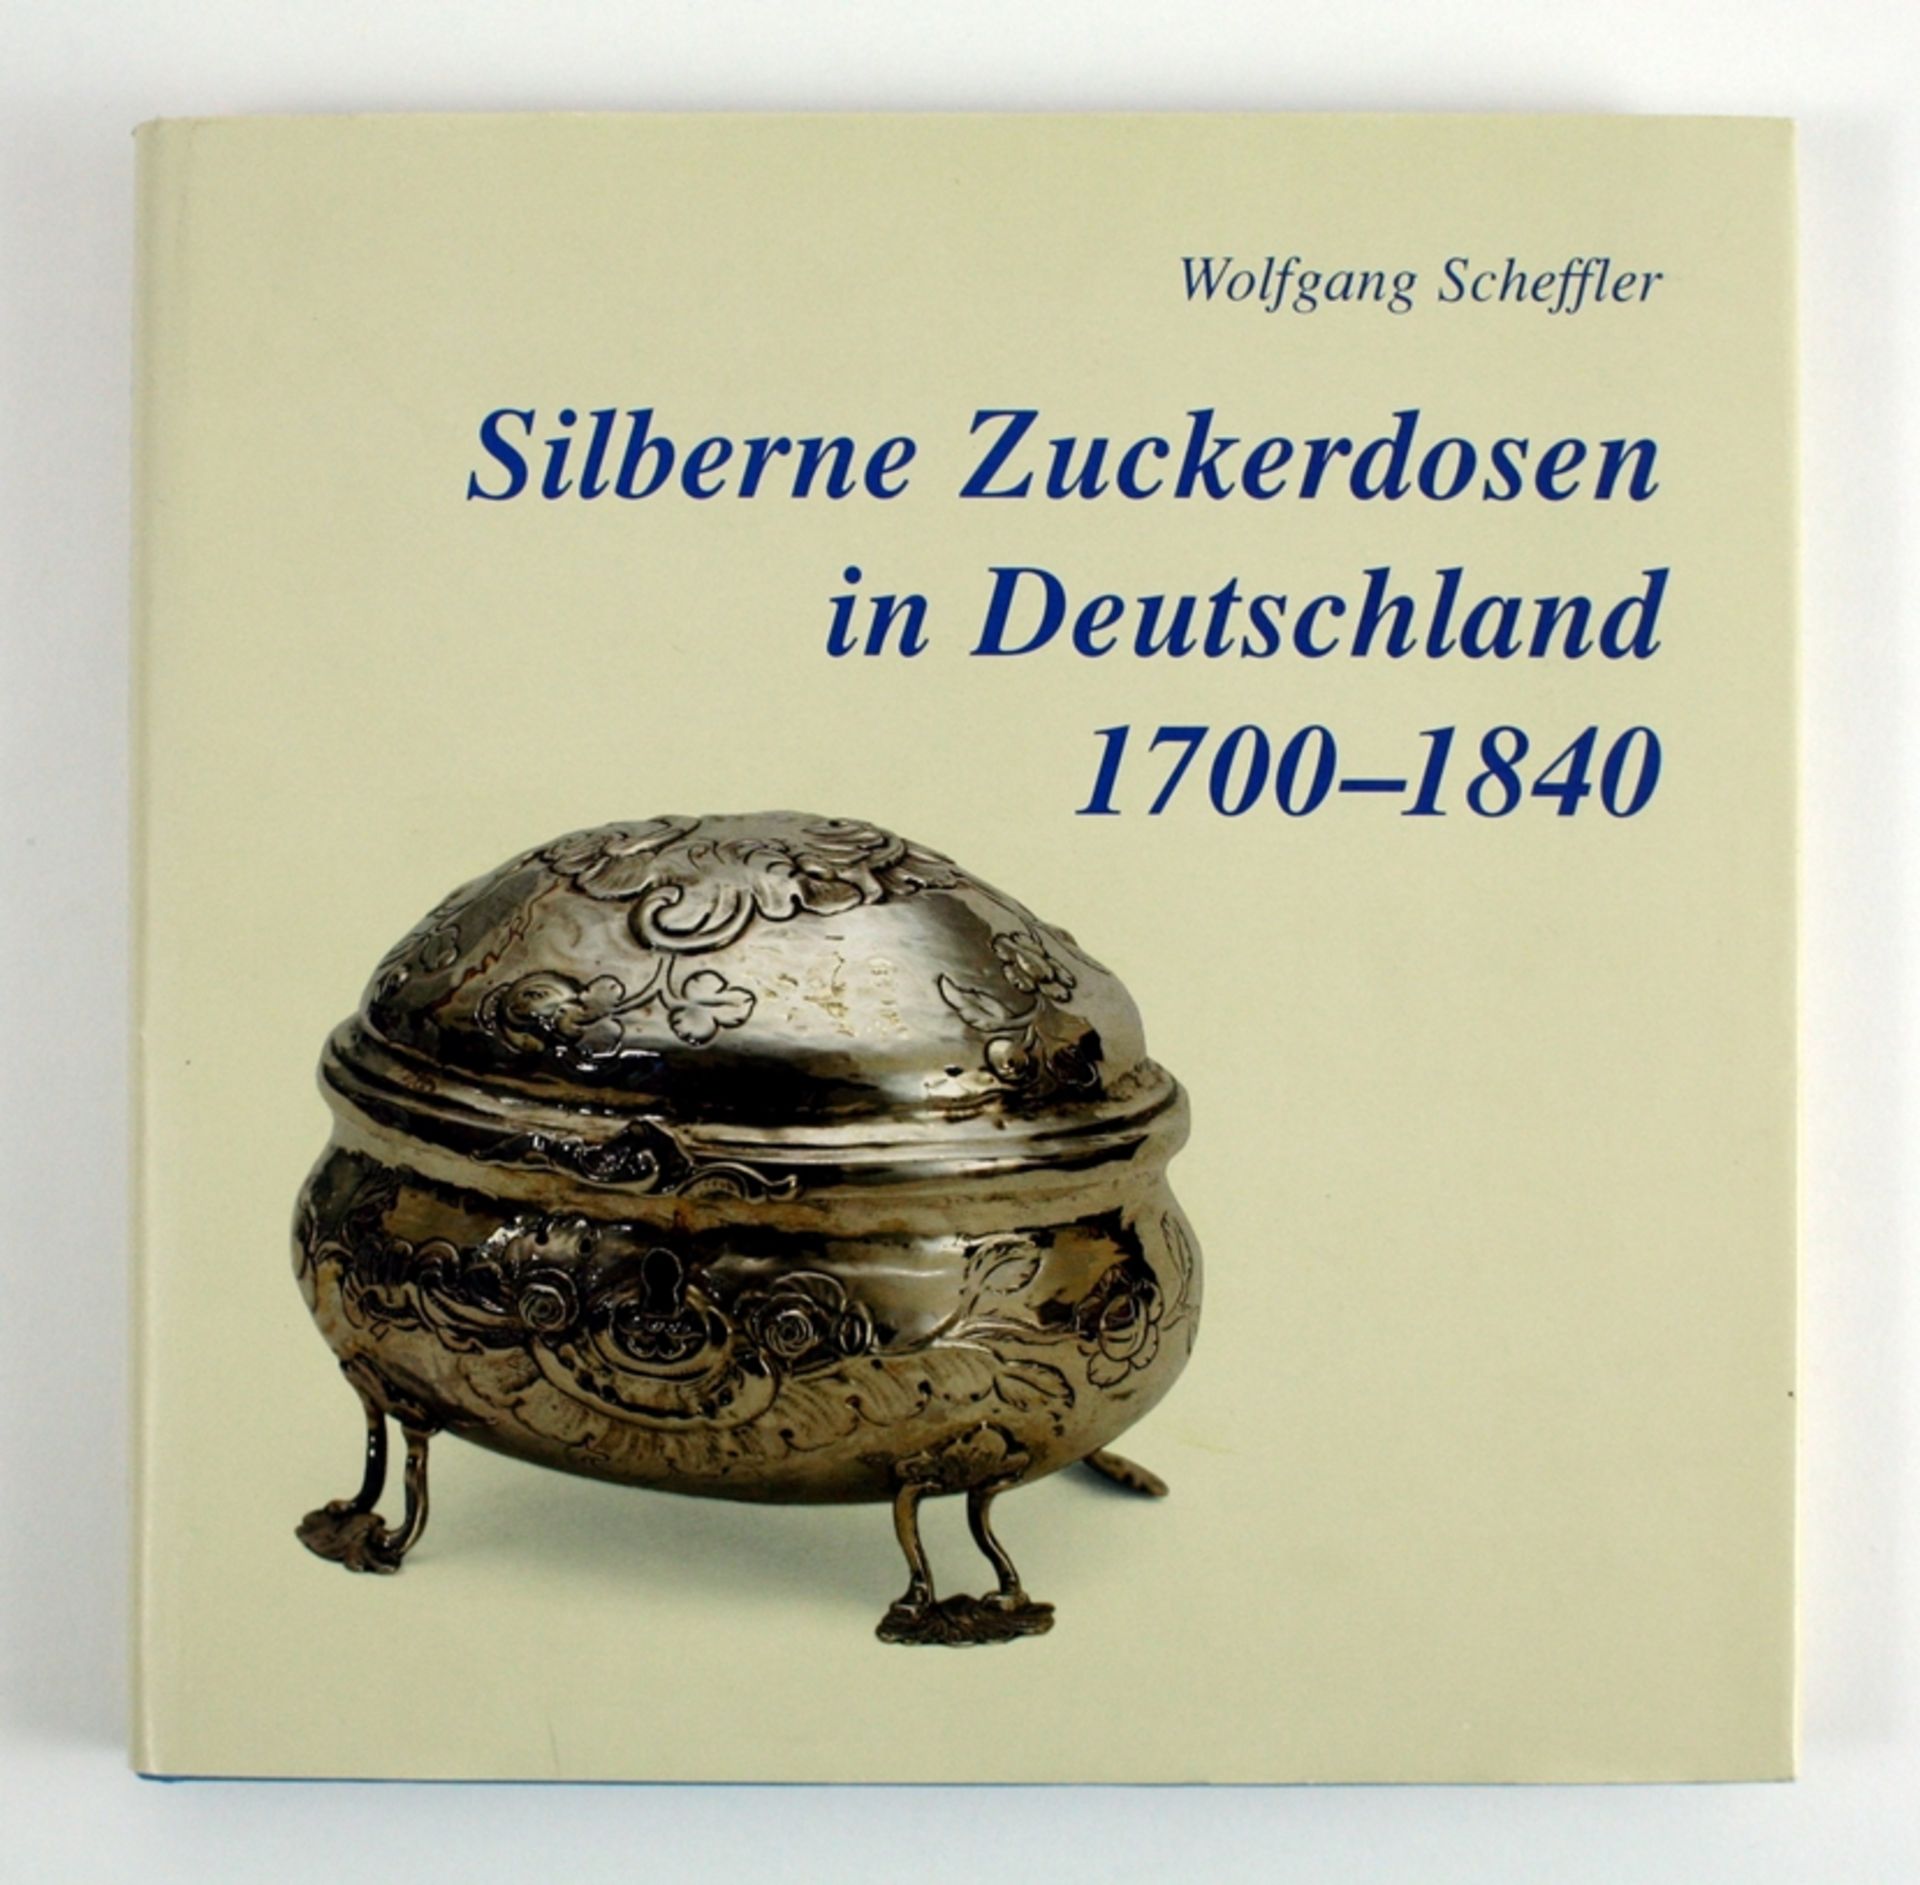 Wolfgang Scheffler. 'Silberne Zuckerdosen in Deutschland 1700 - 1840'. Olwd. 22,5 x 22,5